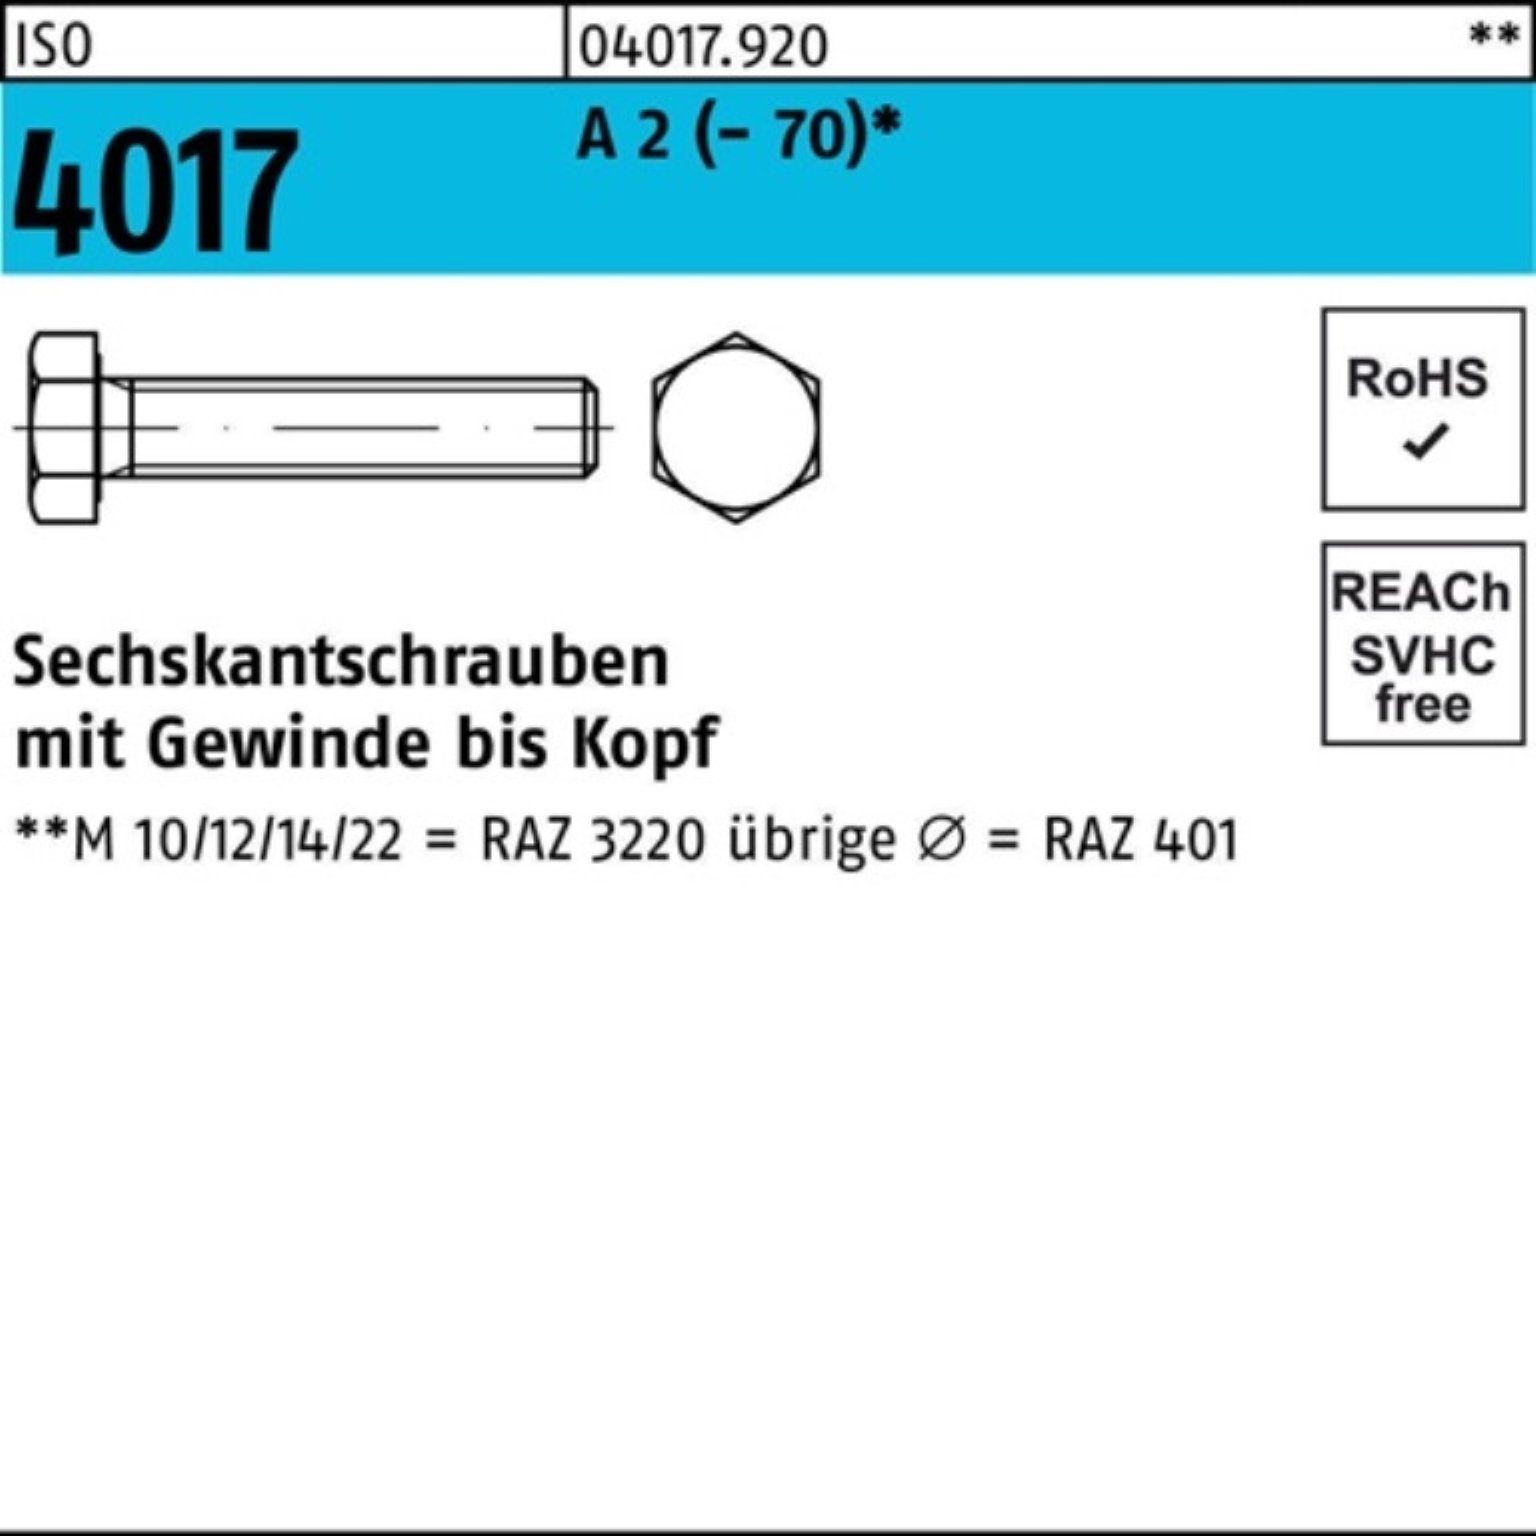 100er ISO Bufab (70) A Pack M33x 1 4017 Stück 2 Sechskantschraube Sechskantschraube VG 150